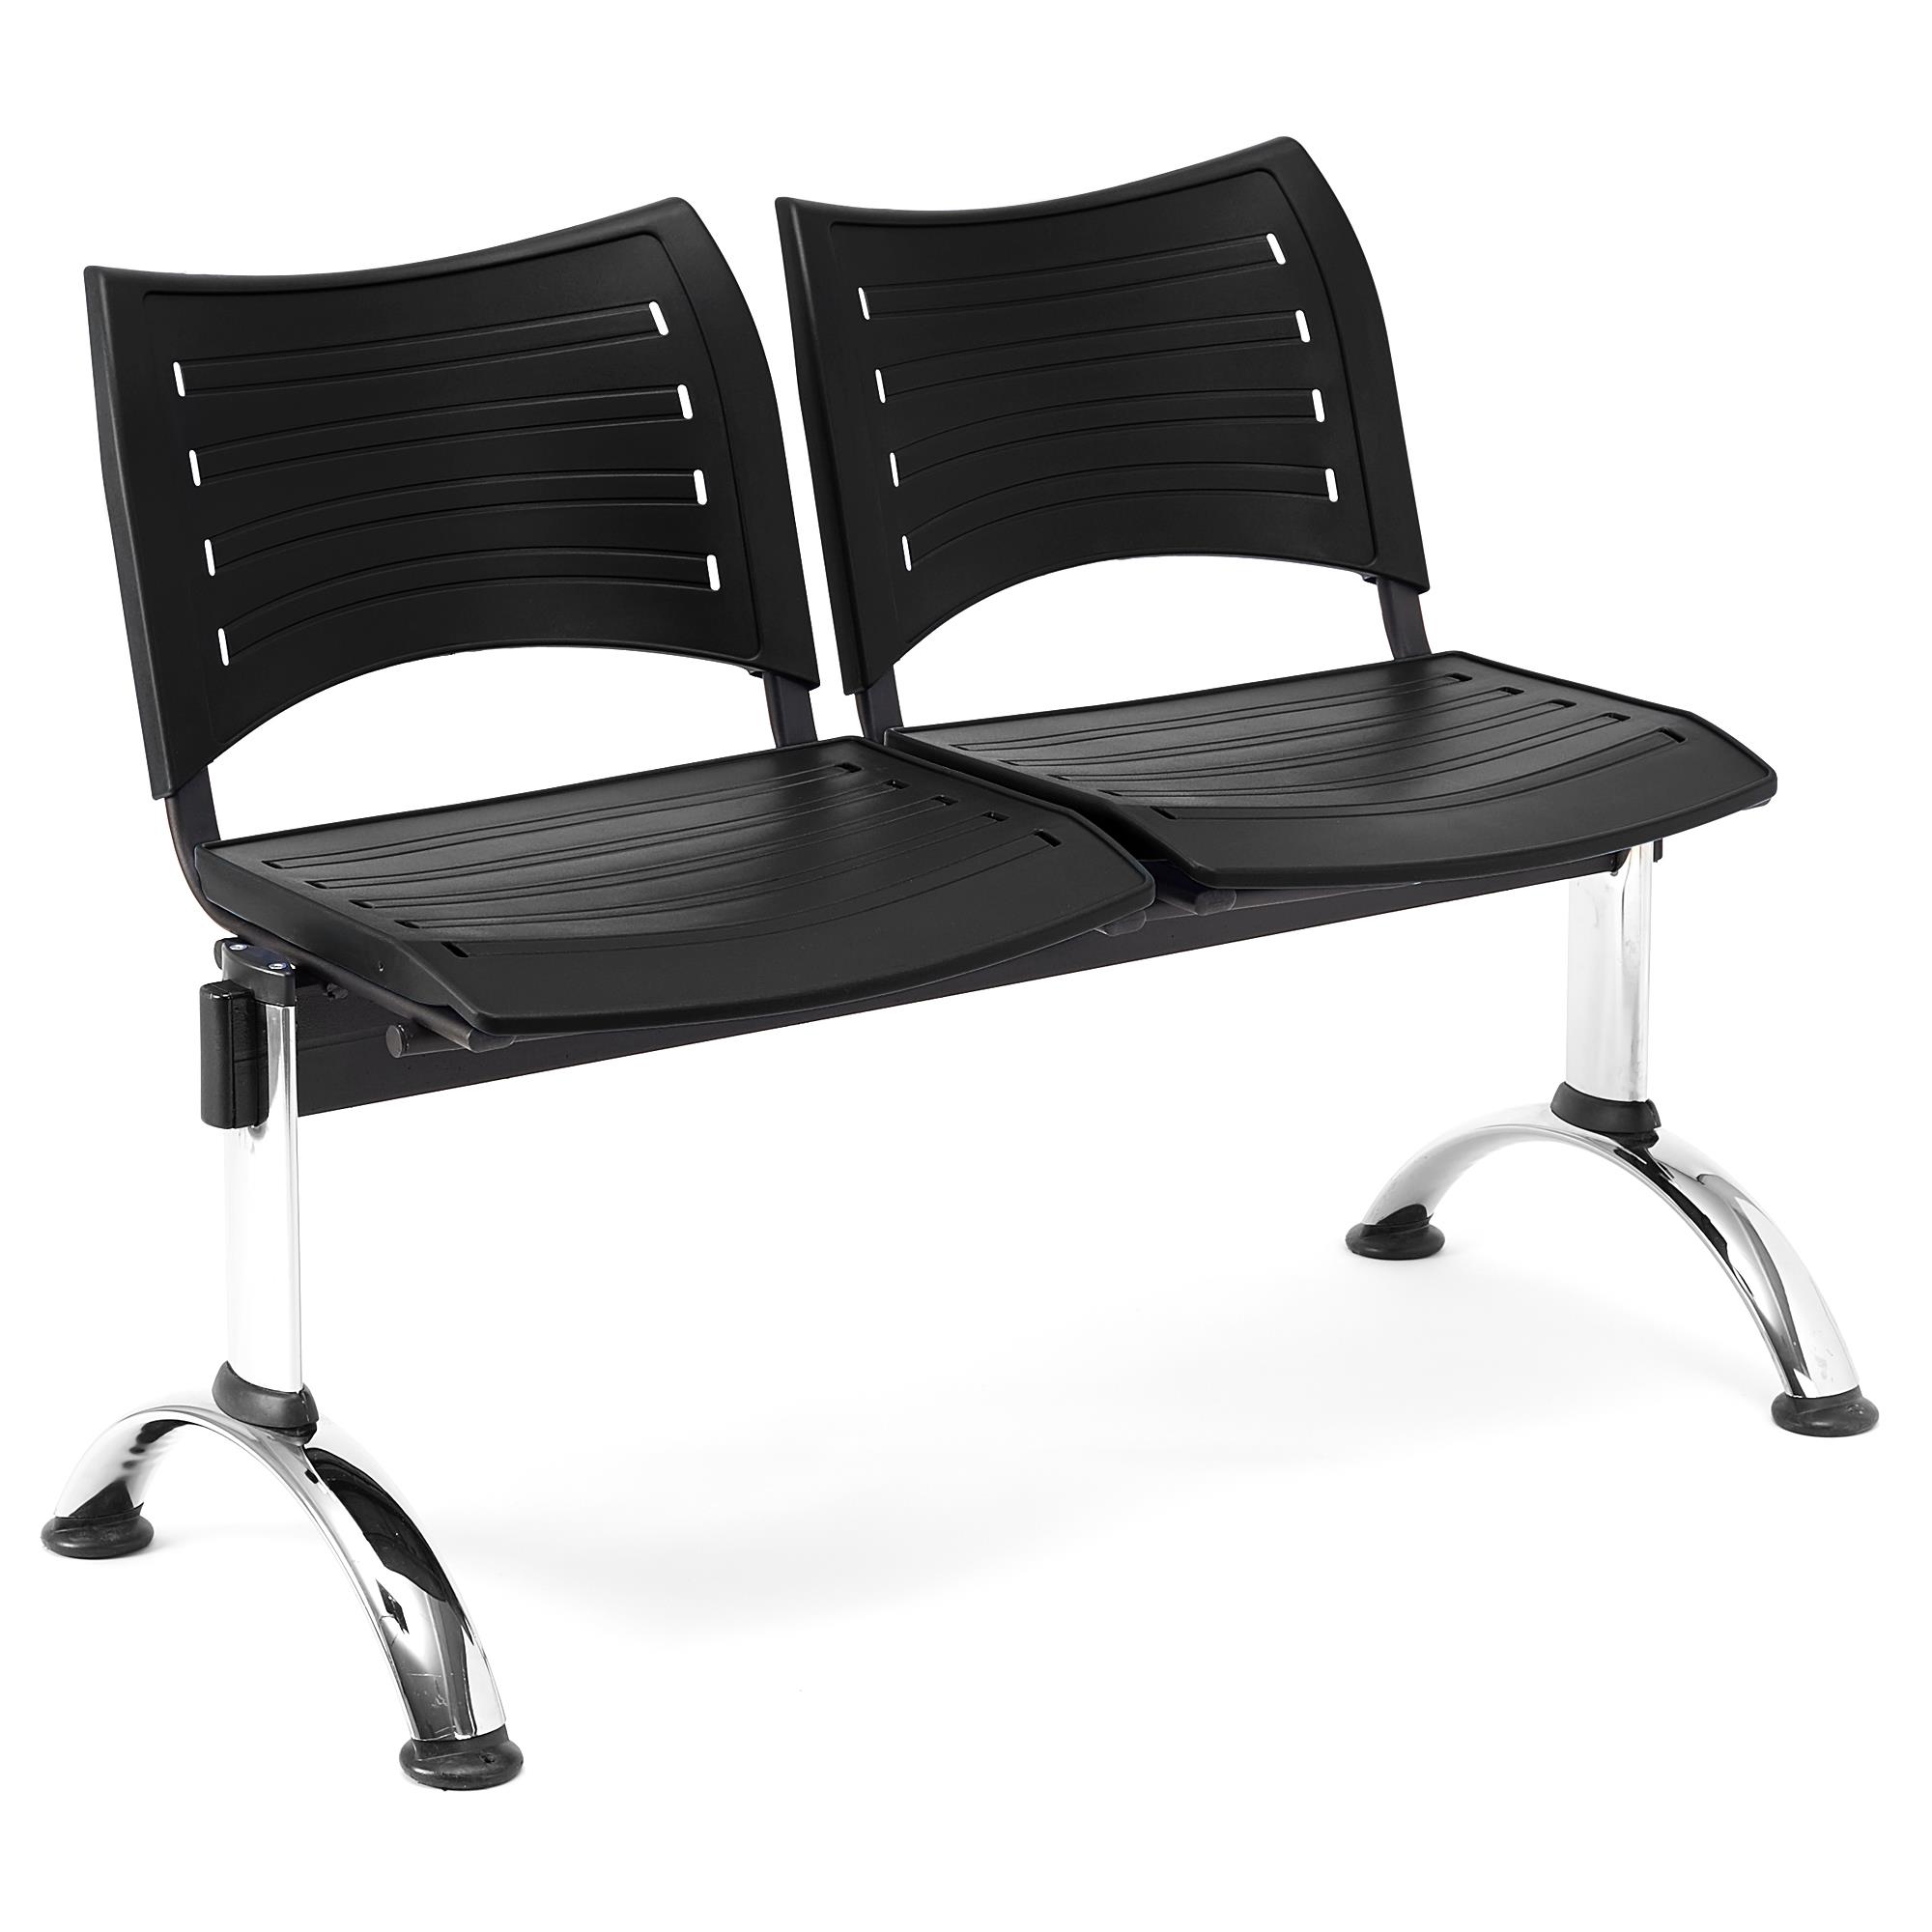 Wartebank ELVA 2-Sitzer, Metallgestell, Kunststoff, Farbe Schwarz